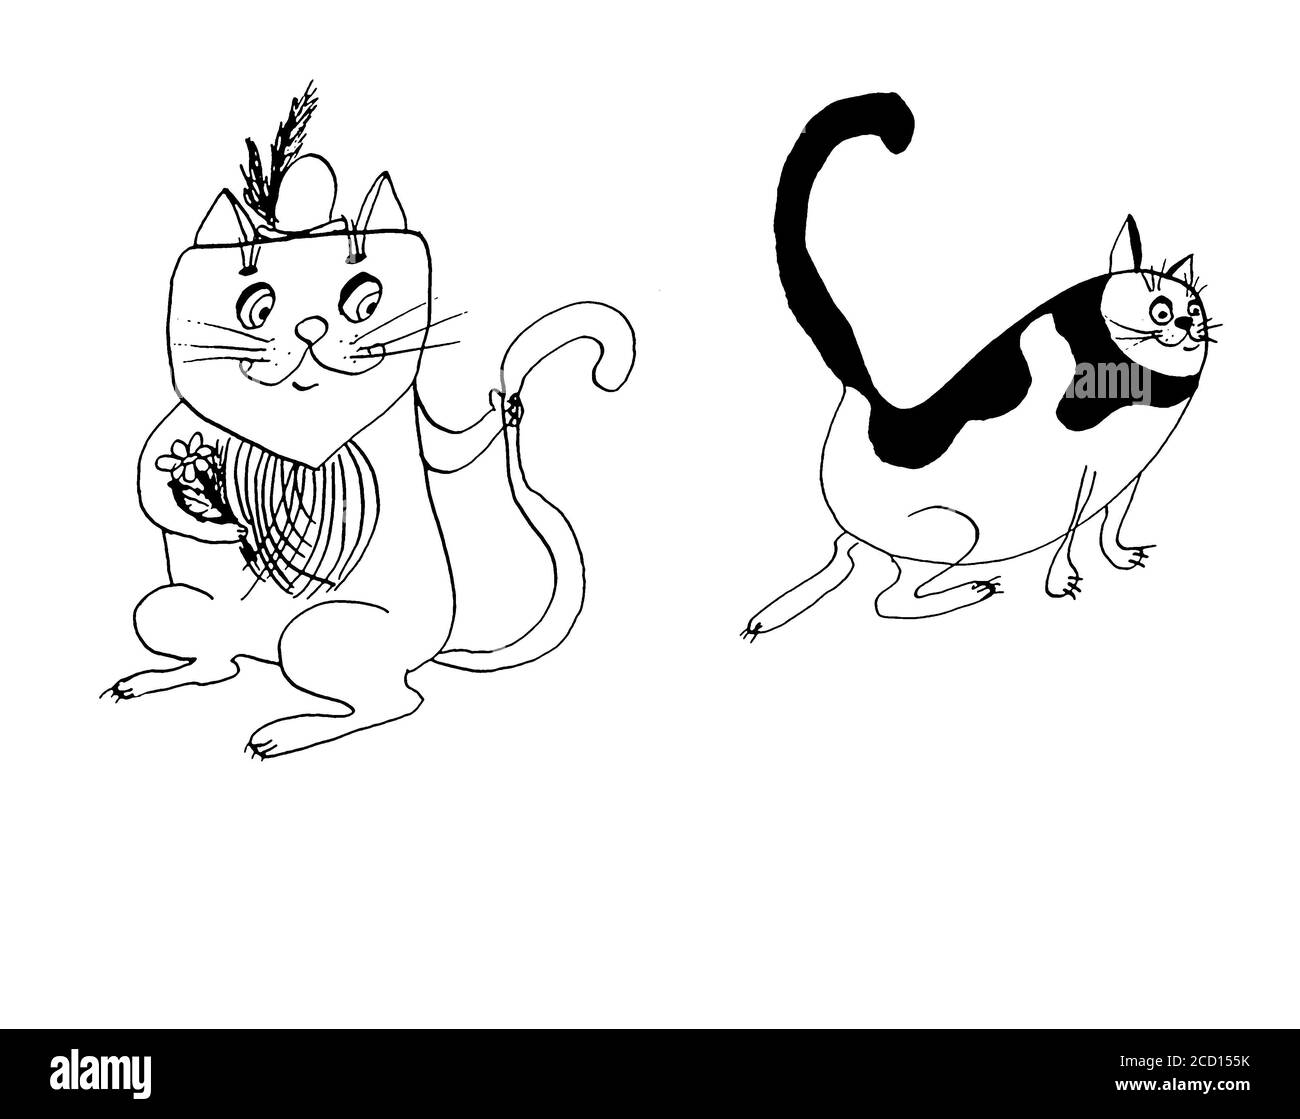 Einfache und minimale Katze Tinte Zeichnung. Zwei Katzen im Comic-Stil  Stockfotografie - Alamy